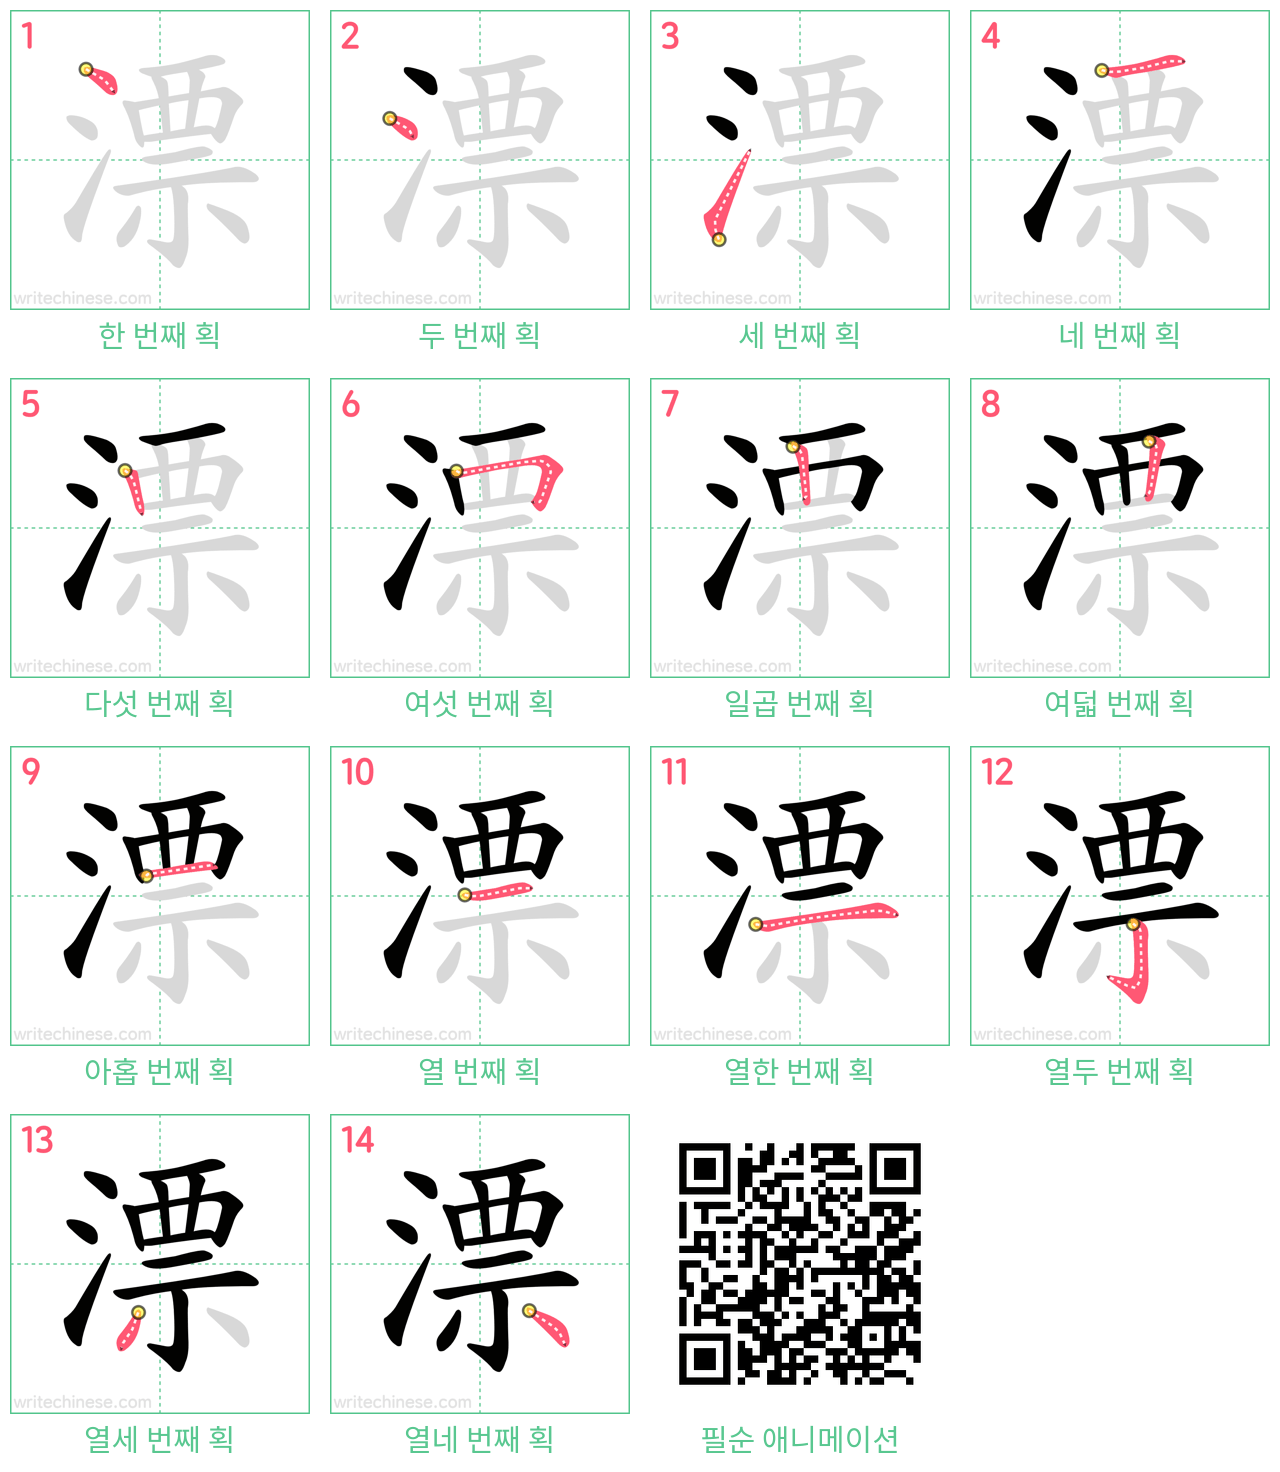 漂 step-by-step stroke order diagrams